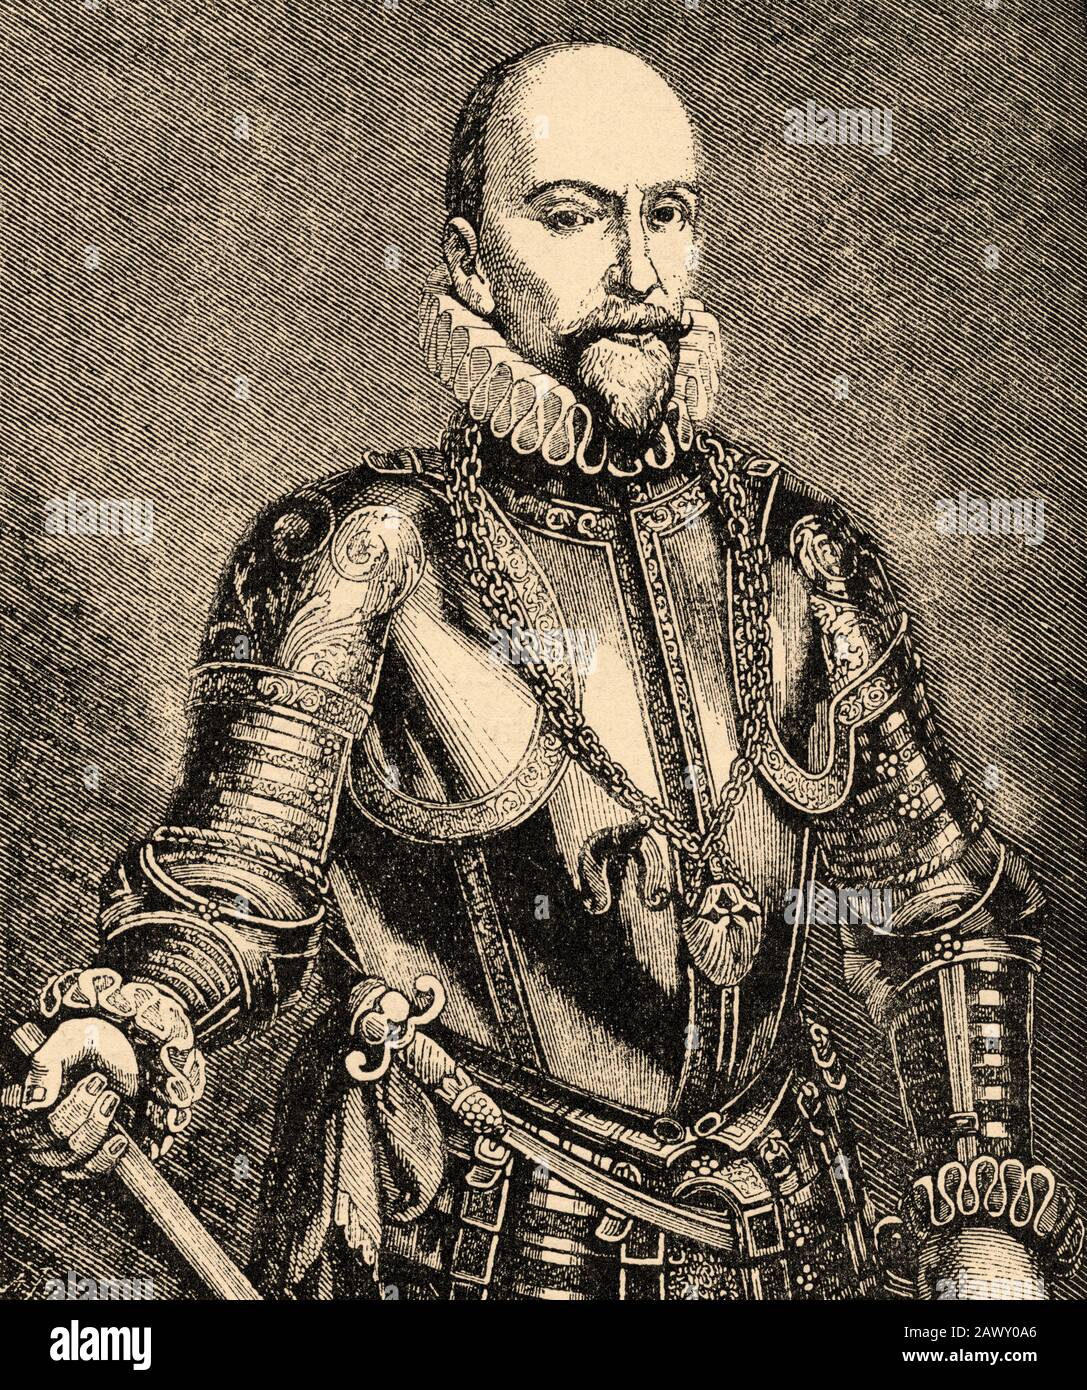 Portrait d'Álvaro de Bazán y Guzmán (Grenade, Espagne; 12 décembre 1526 - Lisbonne, Portugal; 9 février 1588), I Marquis de Santa Cruz, Grande Espagne Banque D'Images